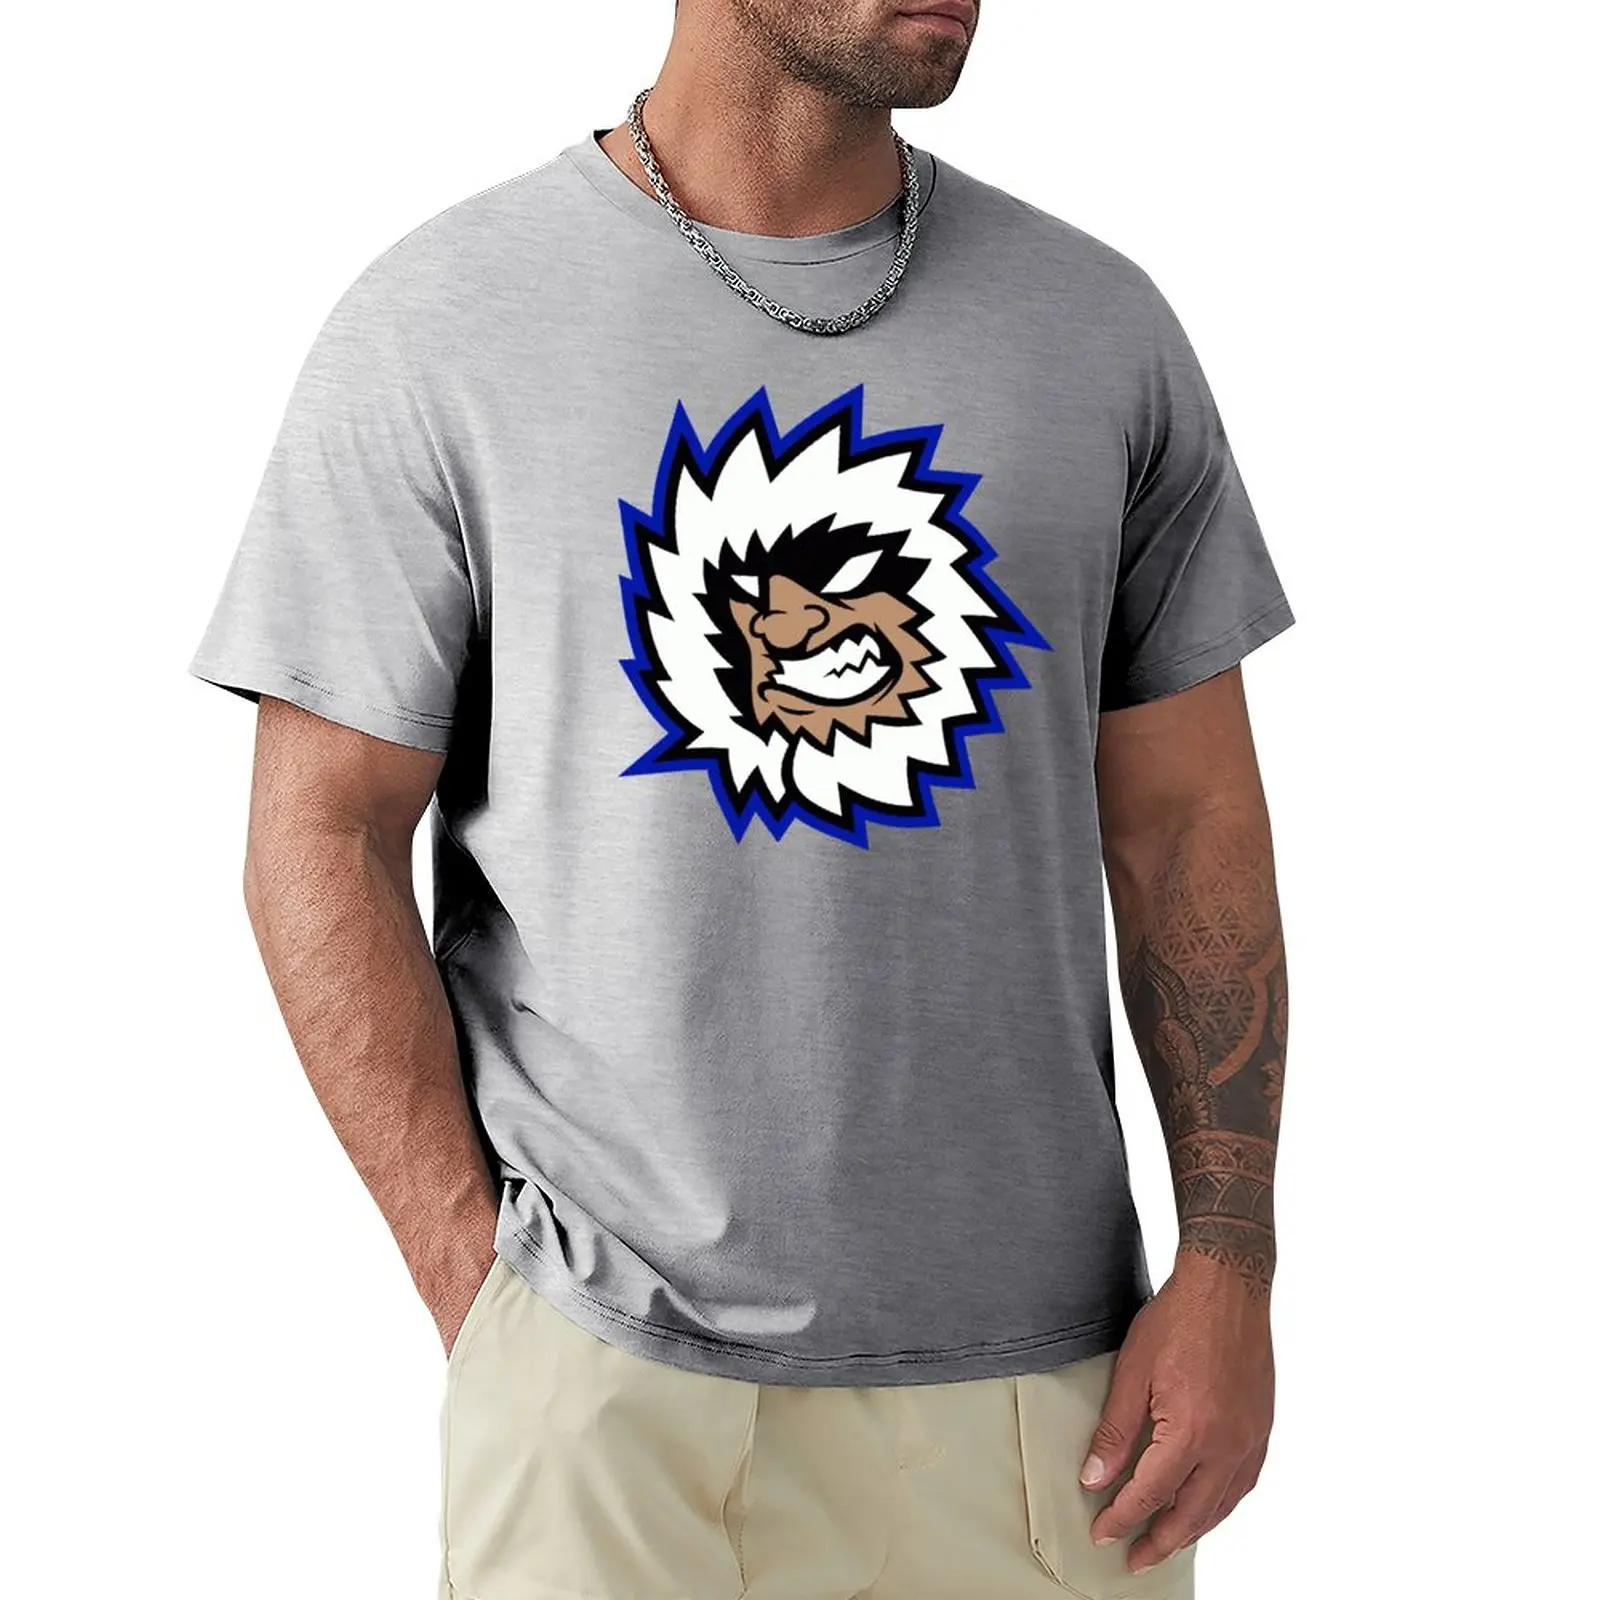 Футболка Evansville IceMen, заготовки, летний топ, мужская хлопковая футболка с аниме